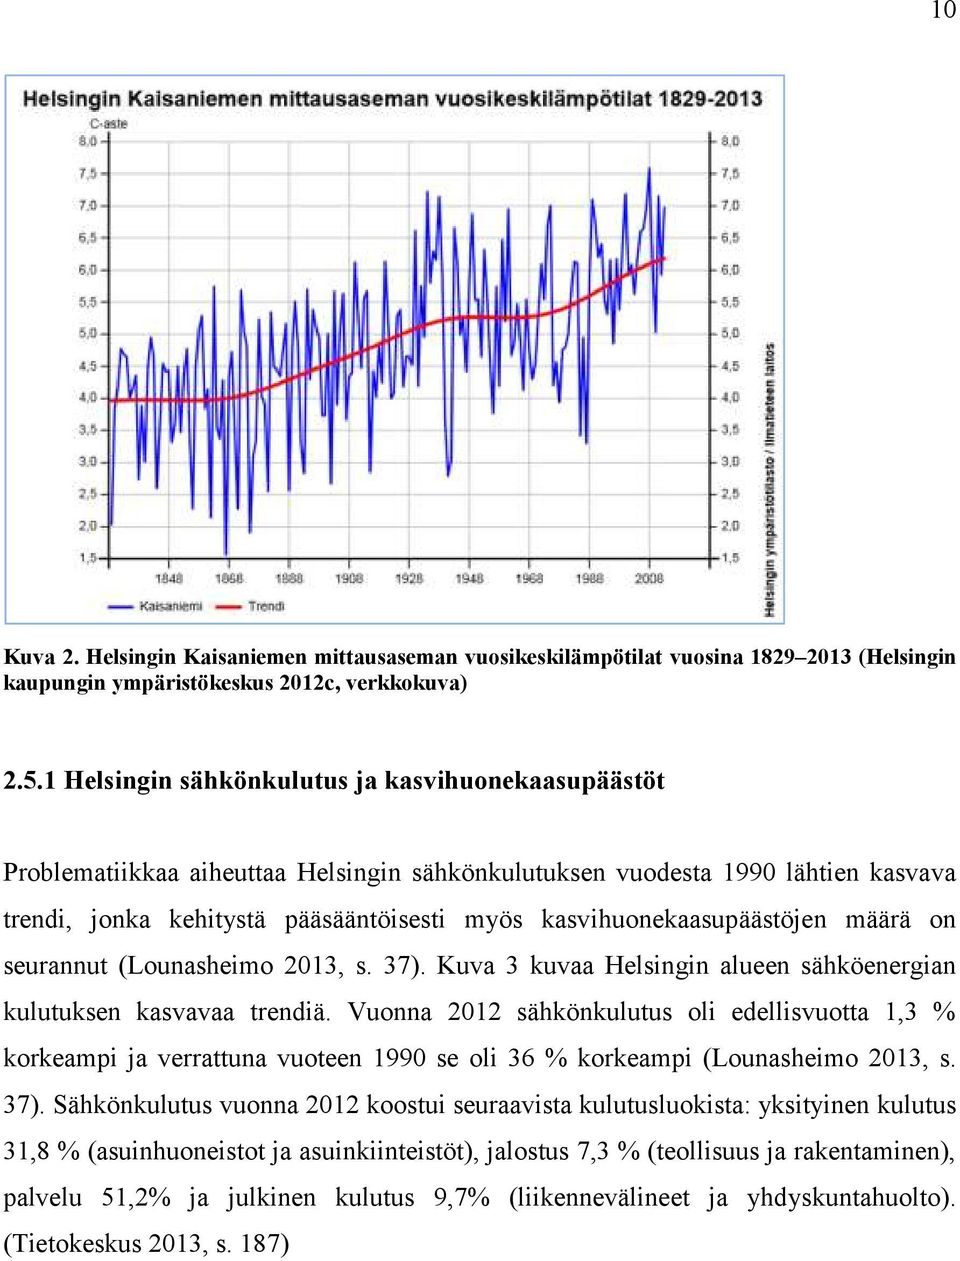 kasvihuonekaasupäästöjen määrä on seurannut (Lounasheimo 2013, s. 37). Kuva 3 kuvaa Helsingin alueen sähköenergian kulutuksen kasvavaa trendiä.